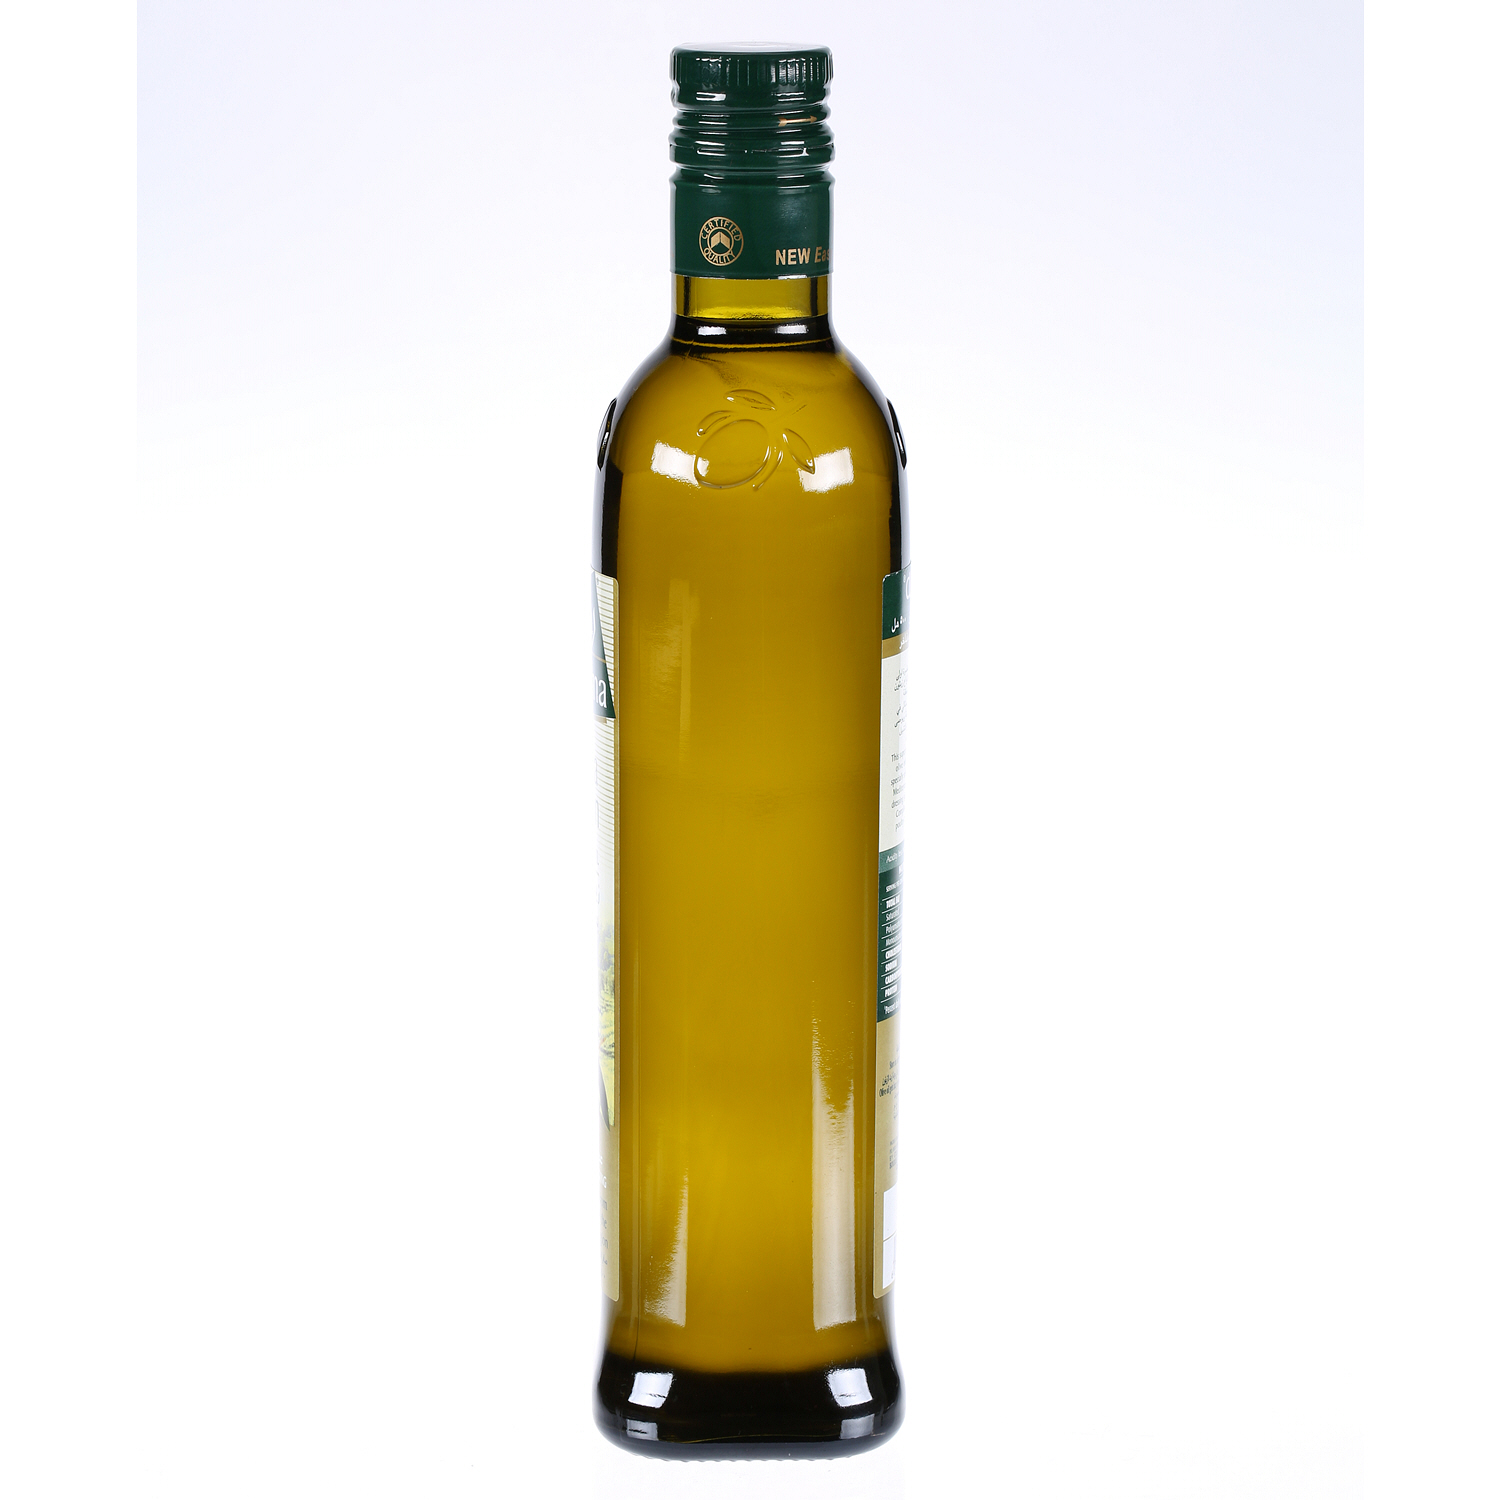 Rahma Extra Virgin Olive Oil 500 ml